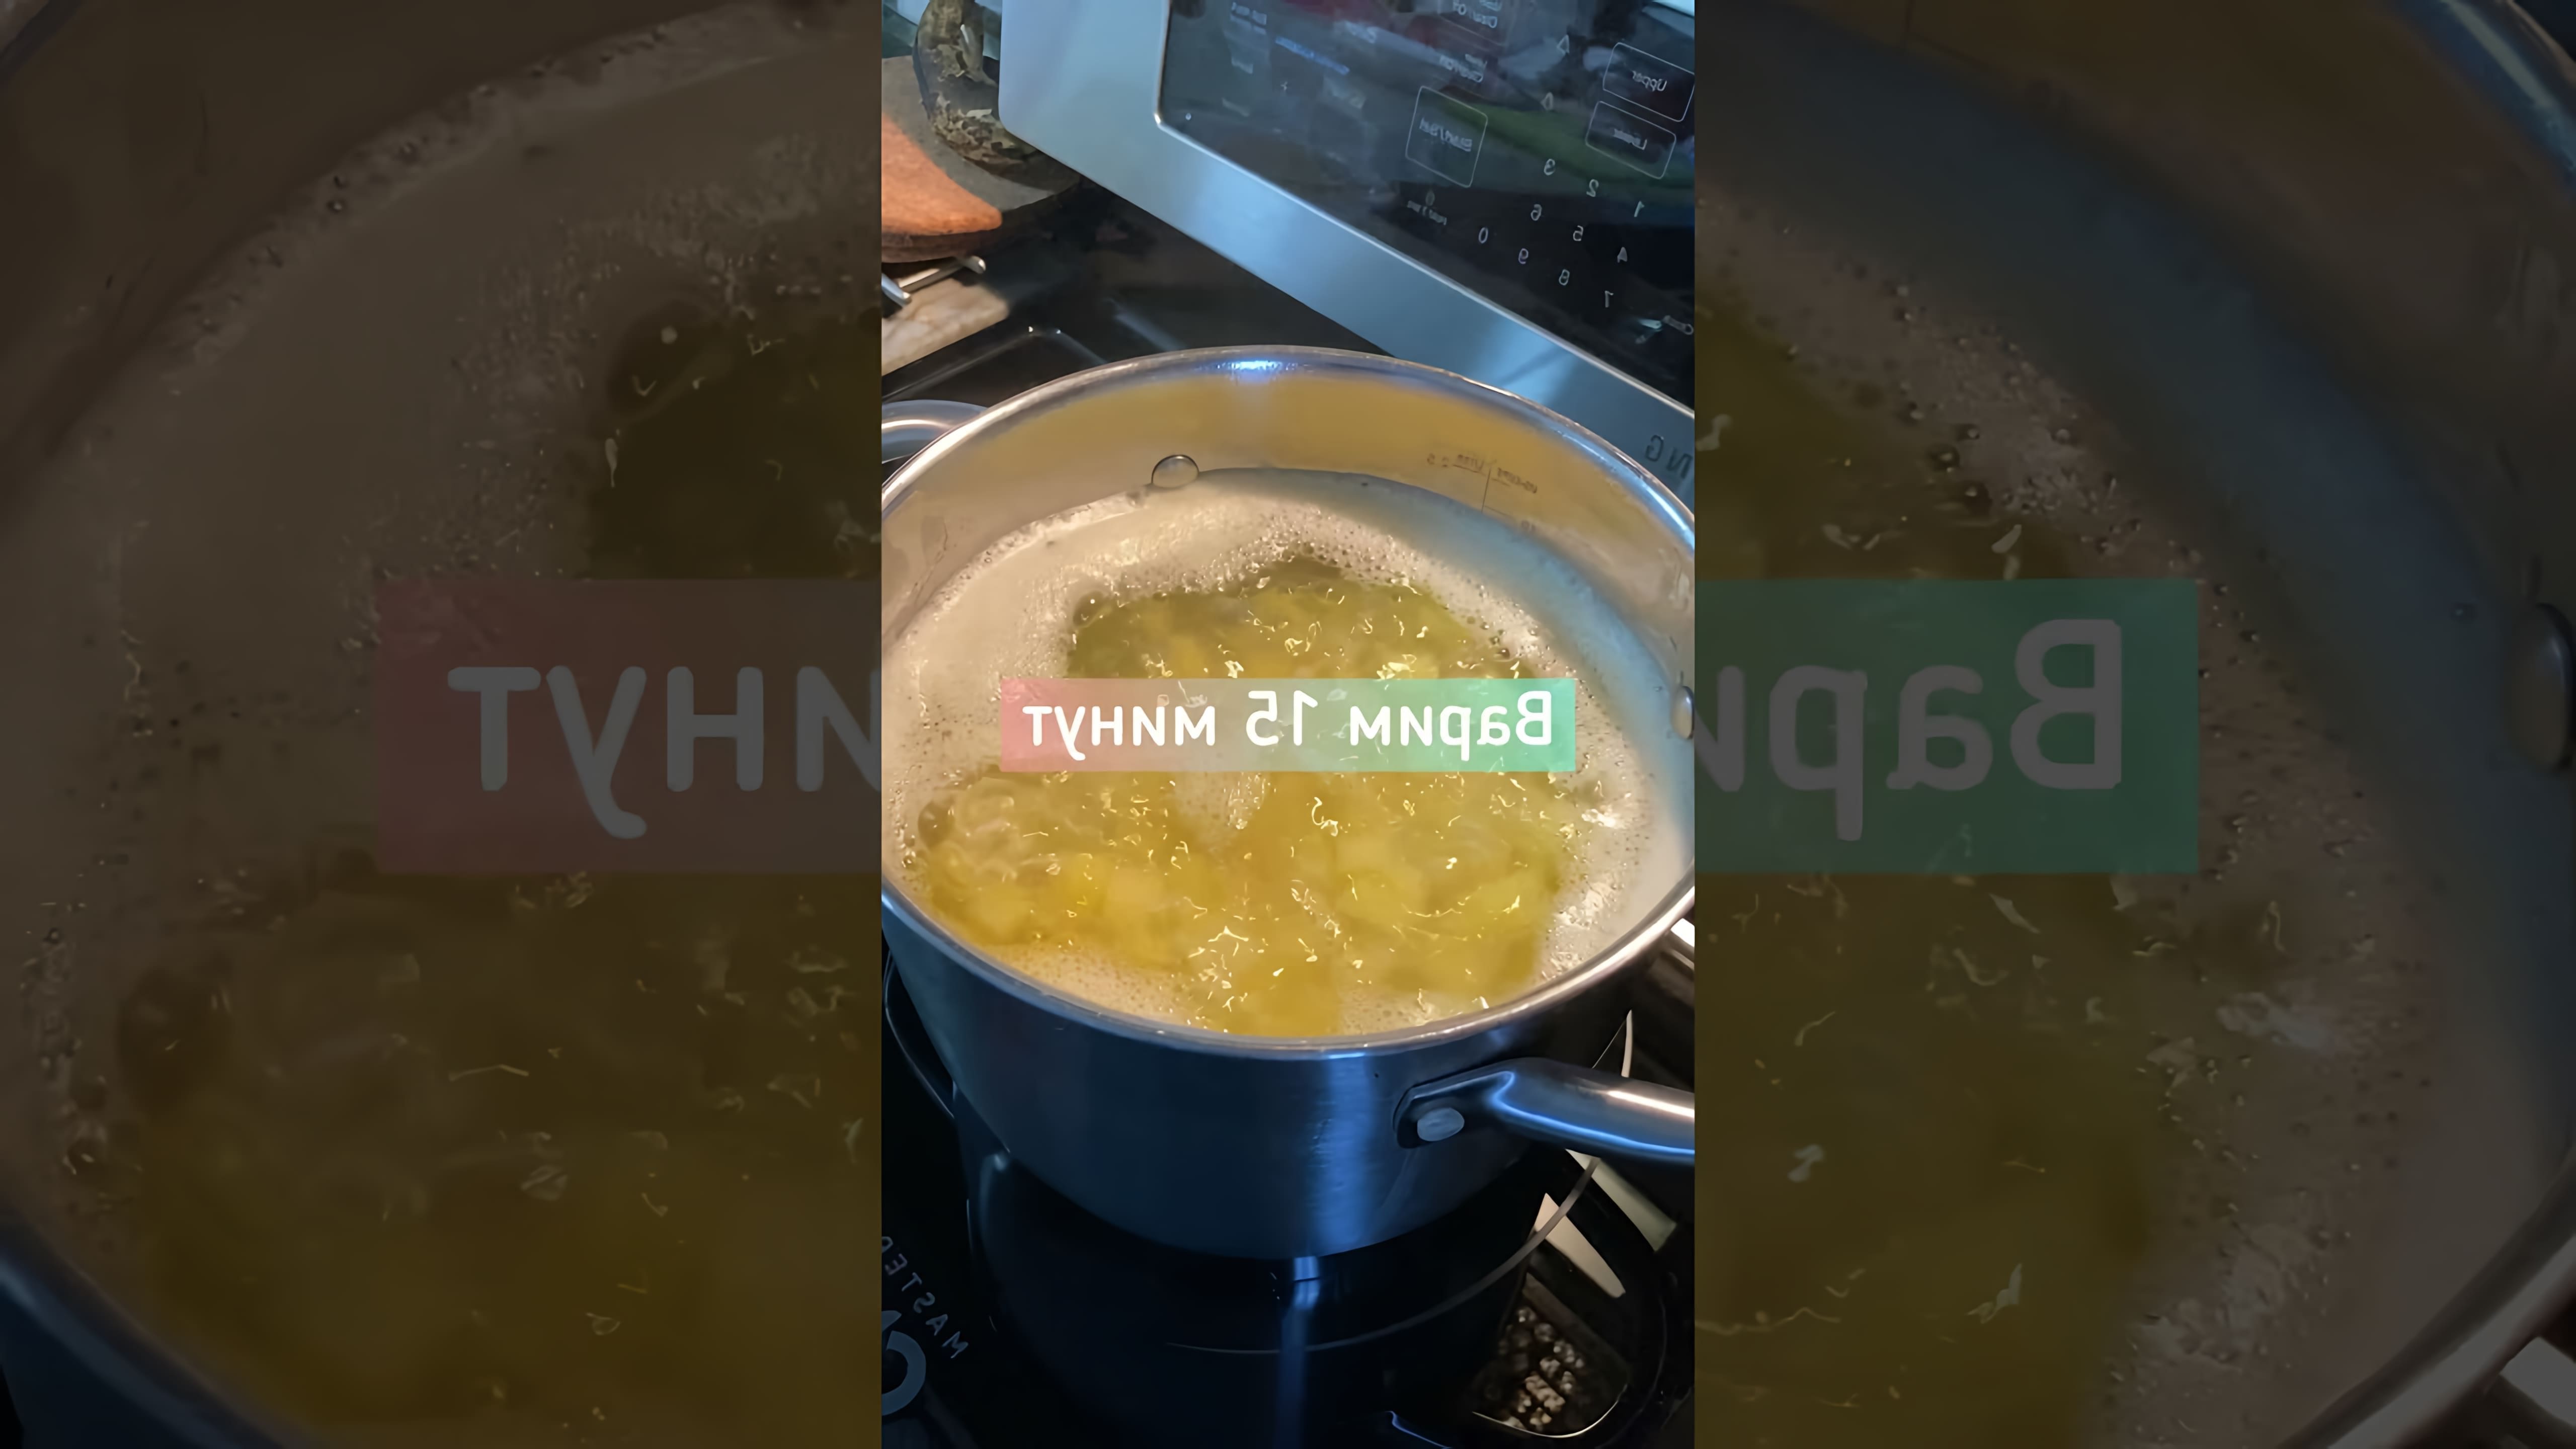 В этом видео-ролике ЯСемья делится своим рецептом приготовления сливочного картофельного пюре